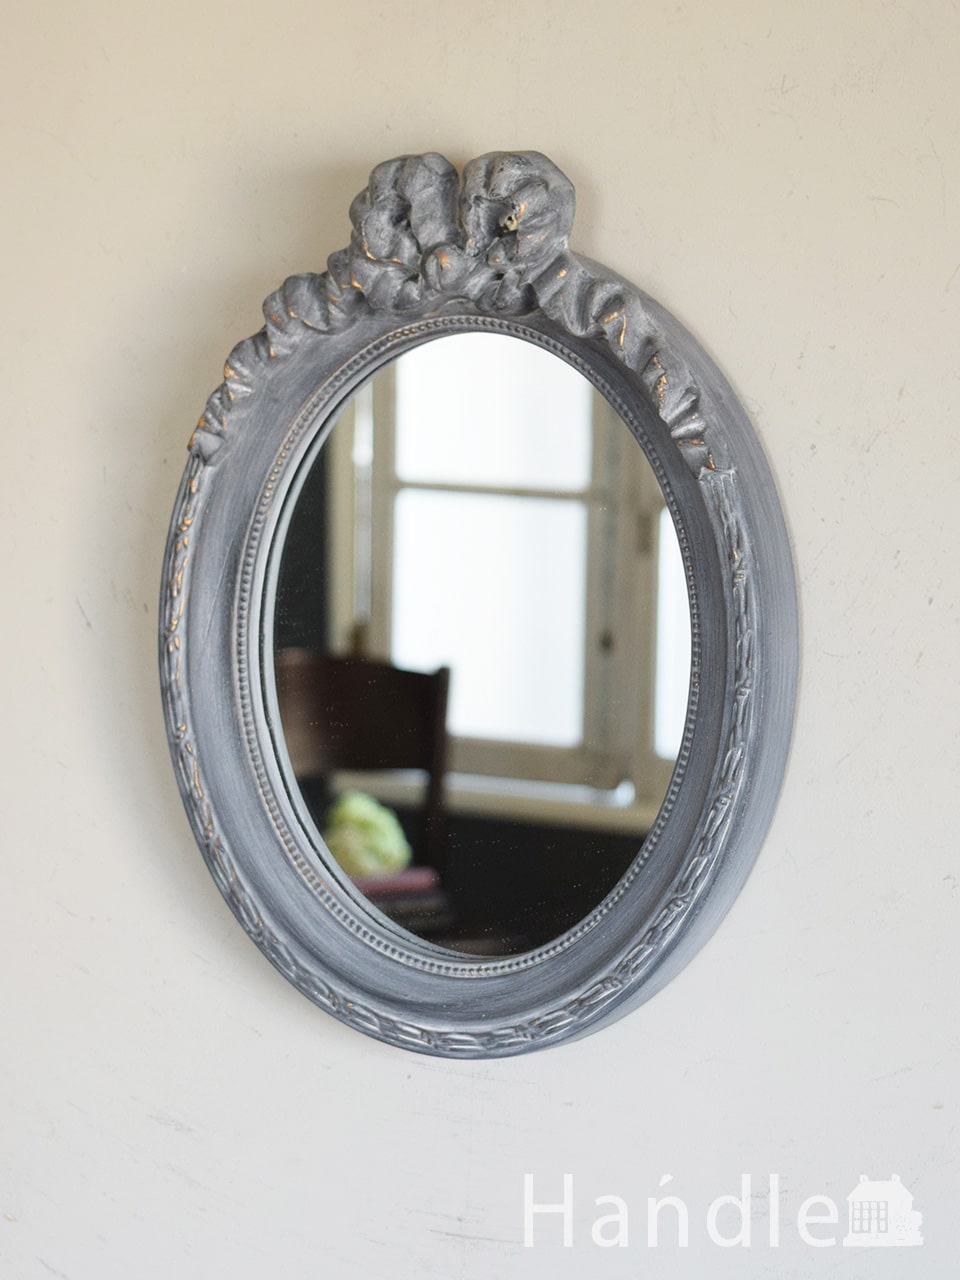 フレンチアンティーク風のおしゃれな鏡、リボンの模様が可愛い壁掛けのミラー (n23-001)